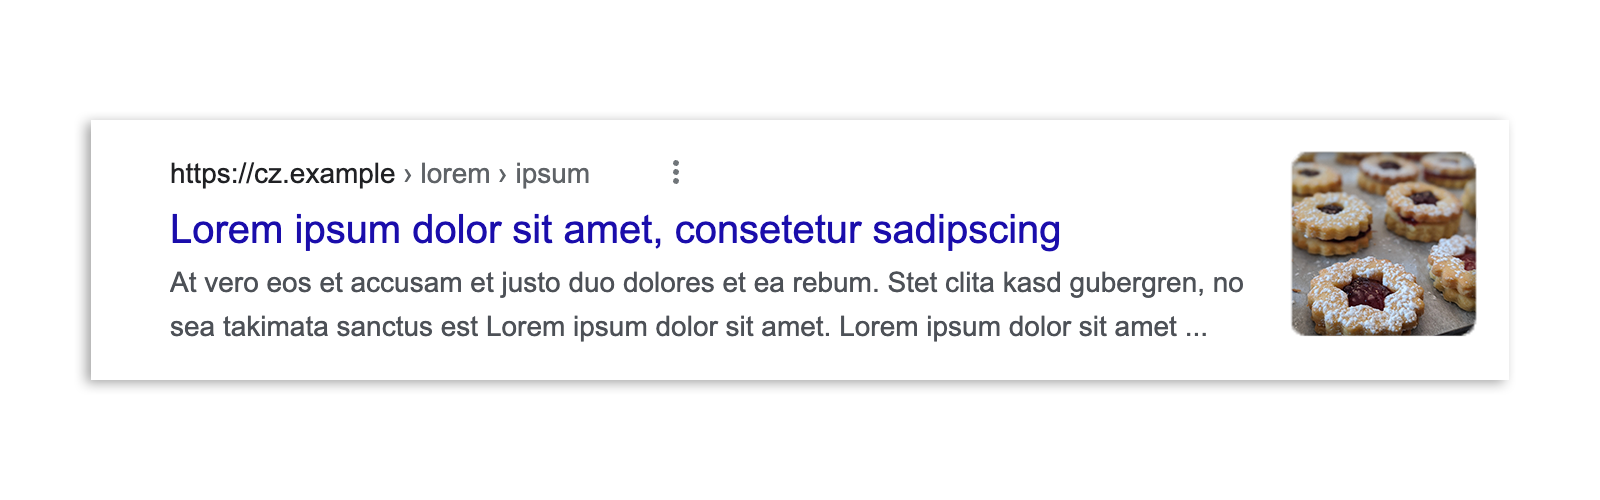 法律制定前のチェコでの Google 検索の検索結果。記事のスニペット、画像プレビュー、見出し、URL が表示されている。